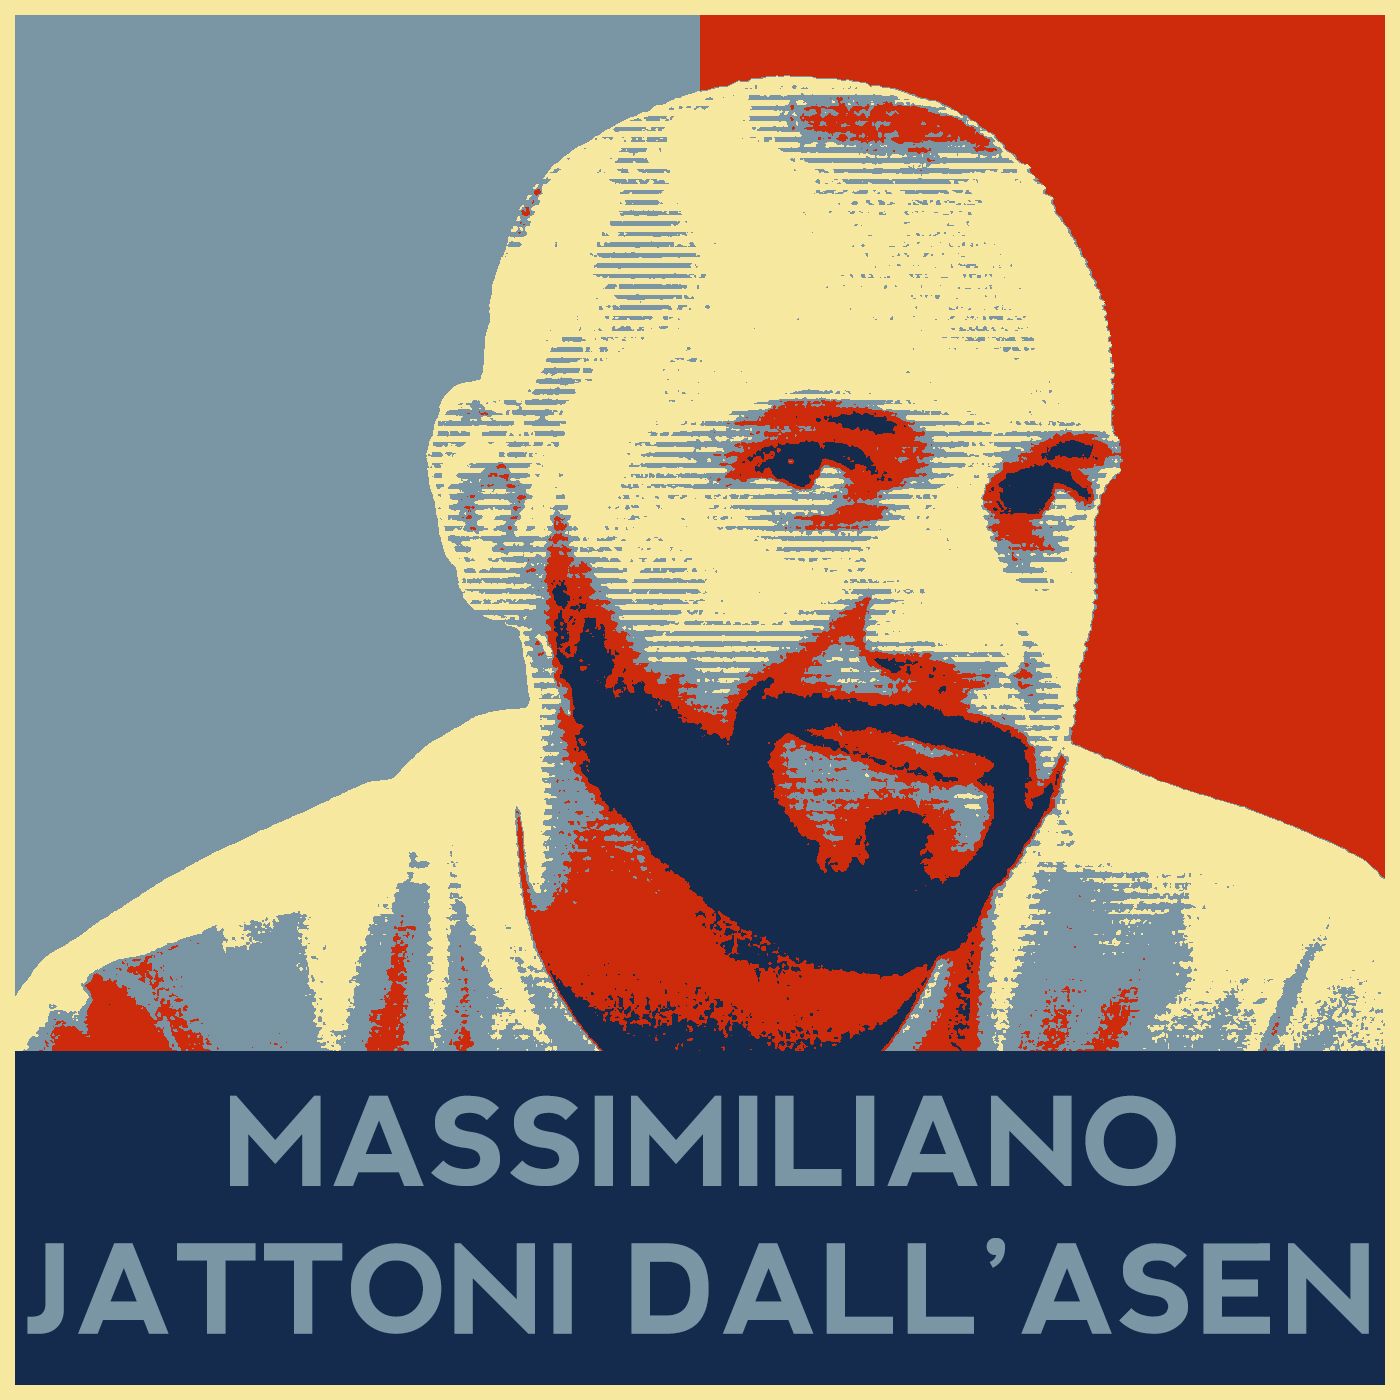 Massimilano Jattoni Dall'Asen - Giornalismo e Serial Killer - Interviste Ciniche